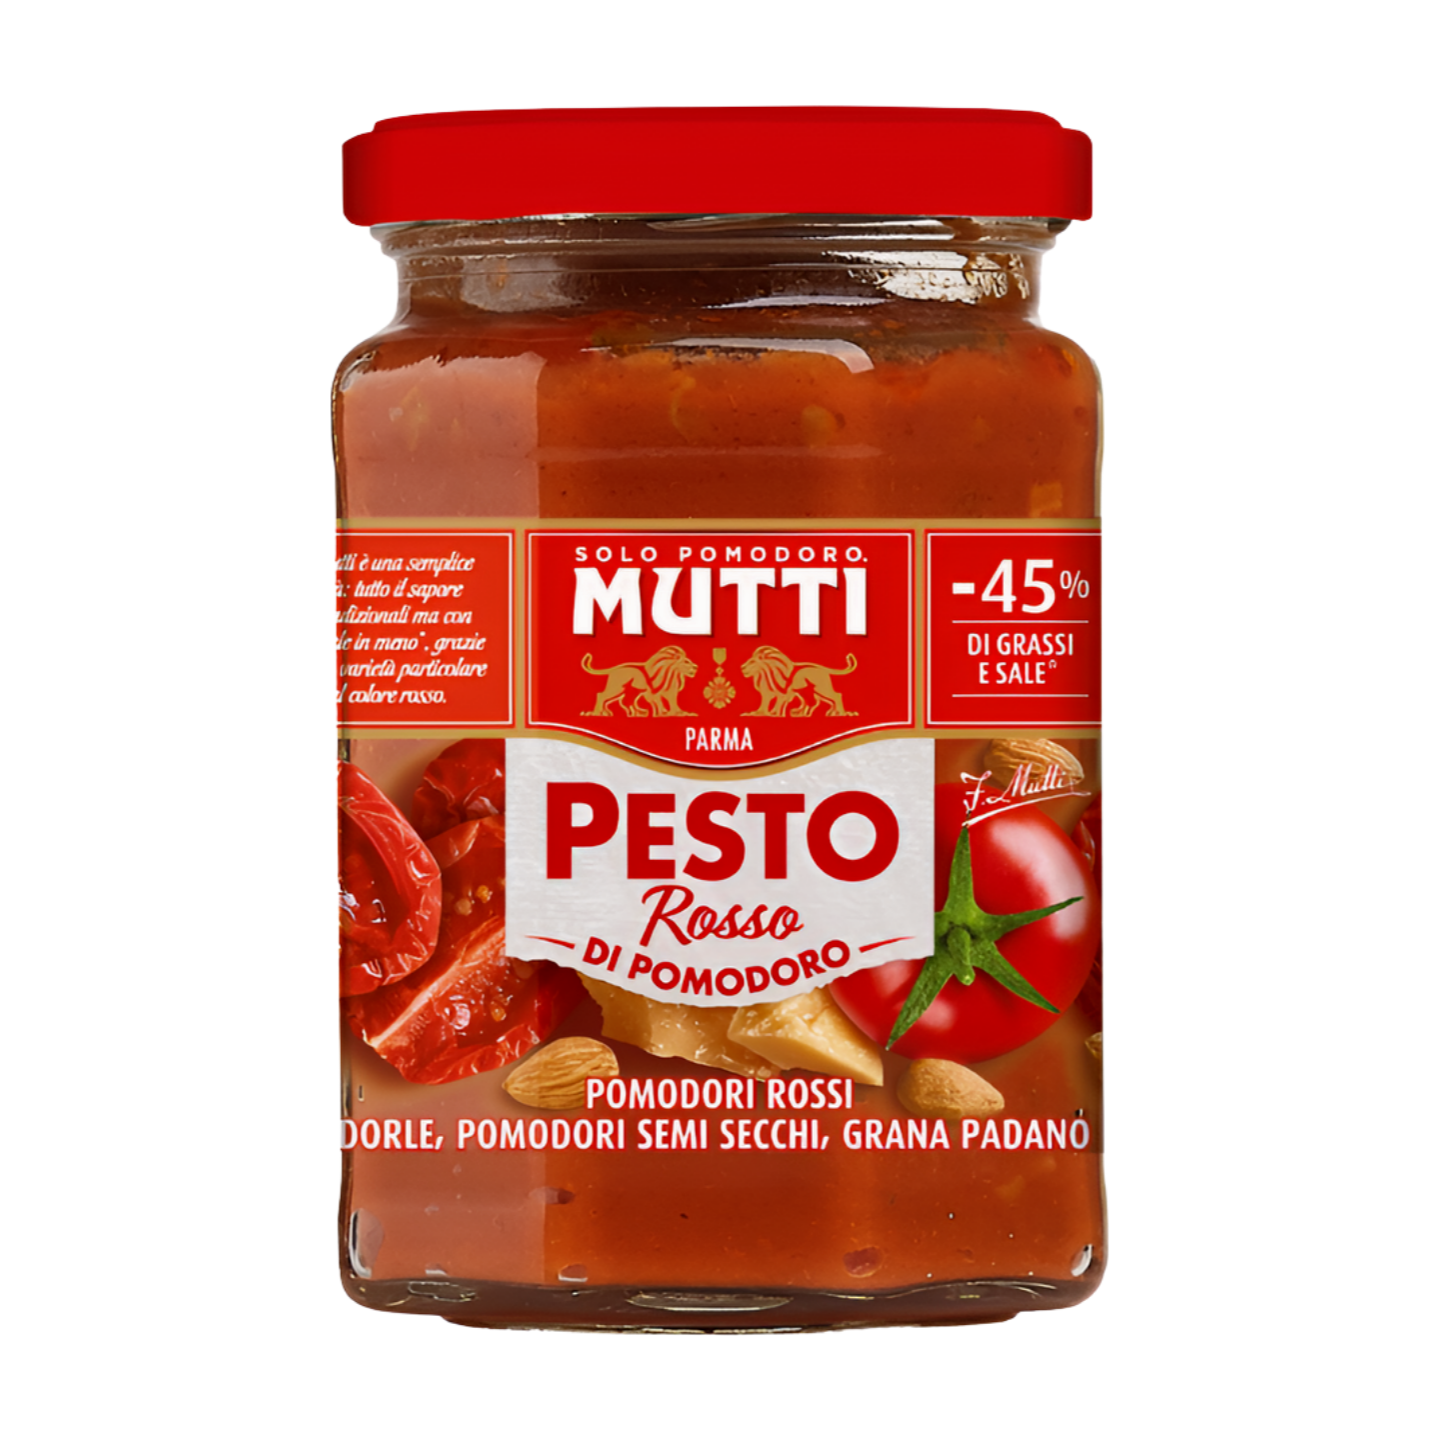 Mutti Rosso di Pomodoro Pesto (180g)